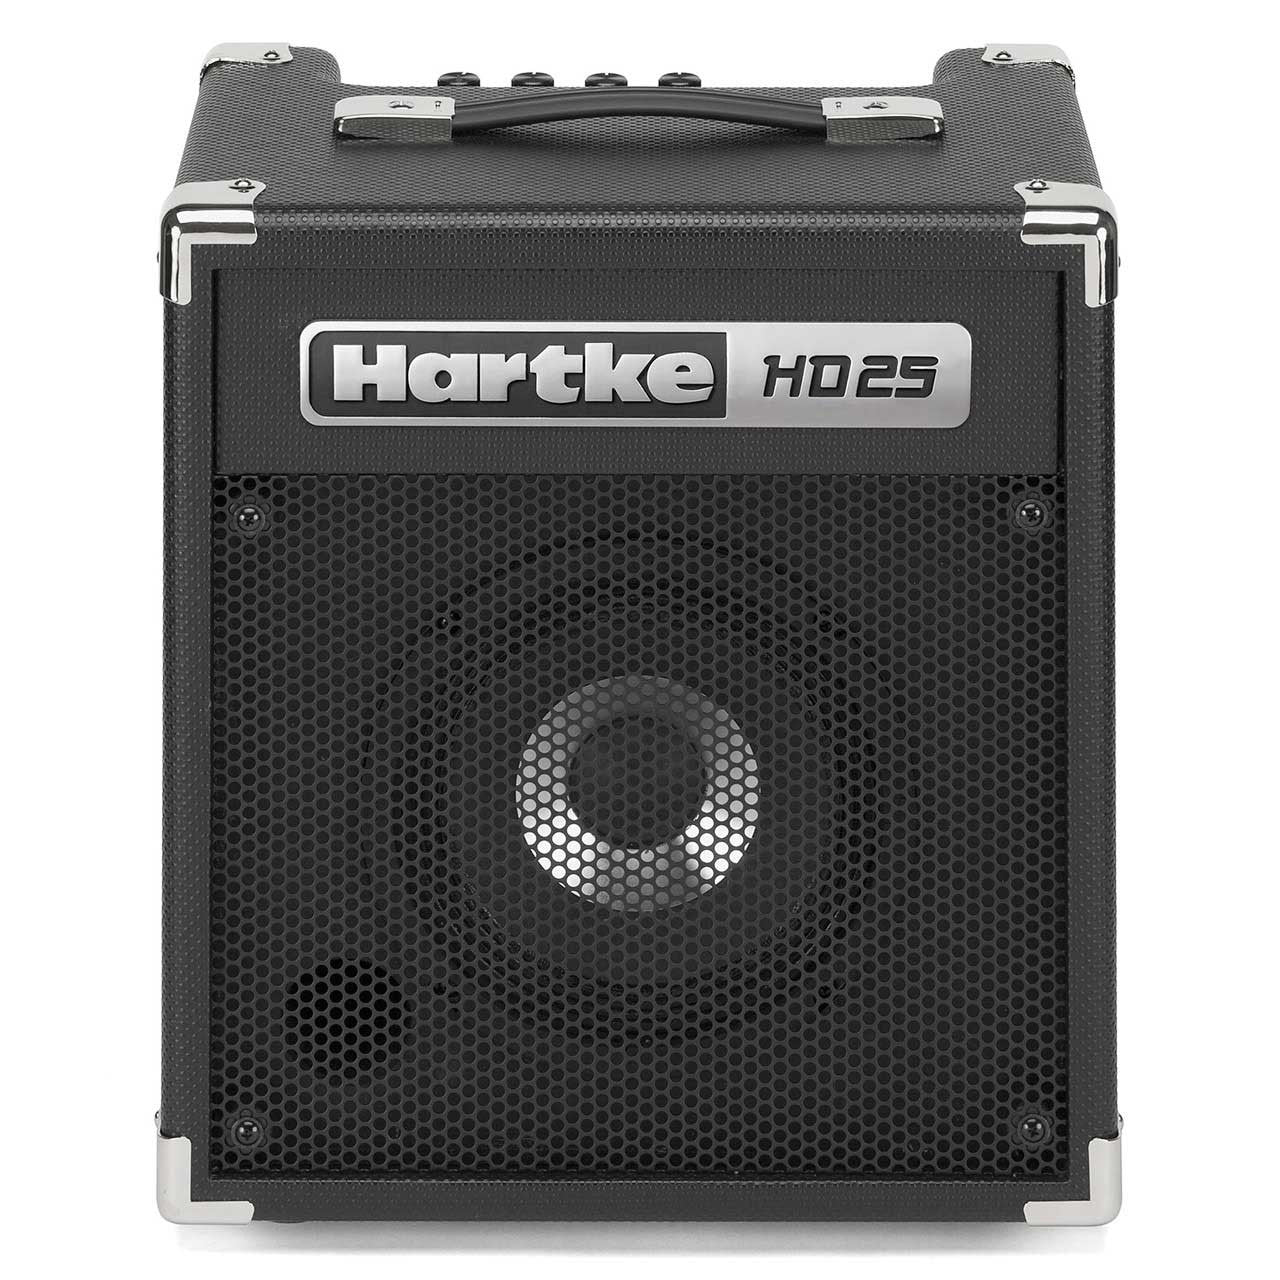 HARTKE HD25, HARTKE, BASS AMPLIFIER, hartke-hd25-bass-combo-amplifier, ZOSO MUSIC SDN BHD